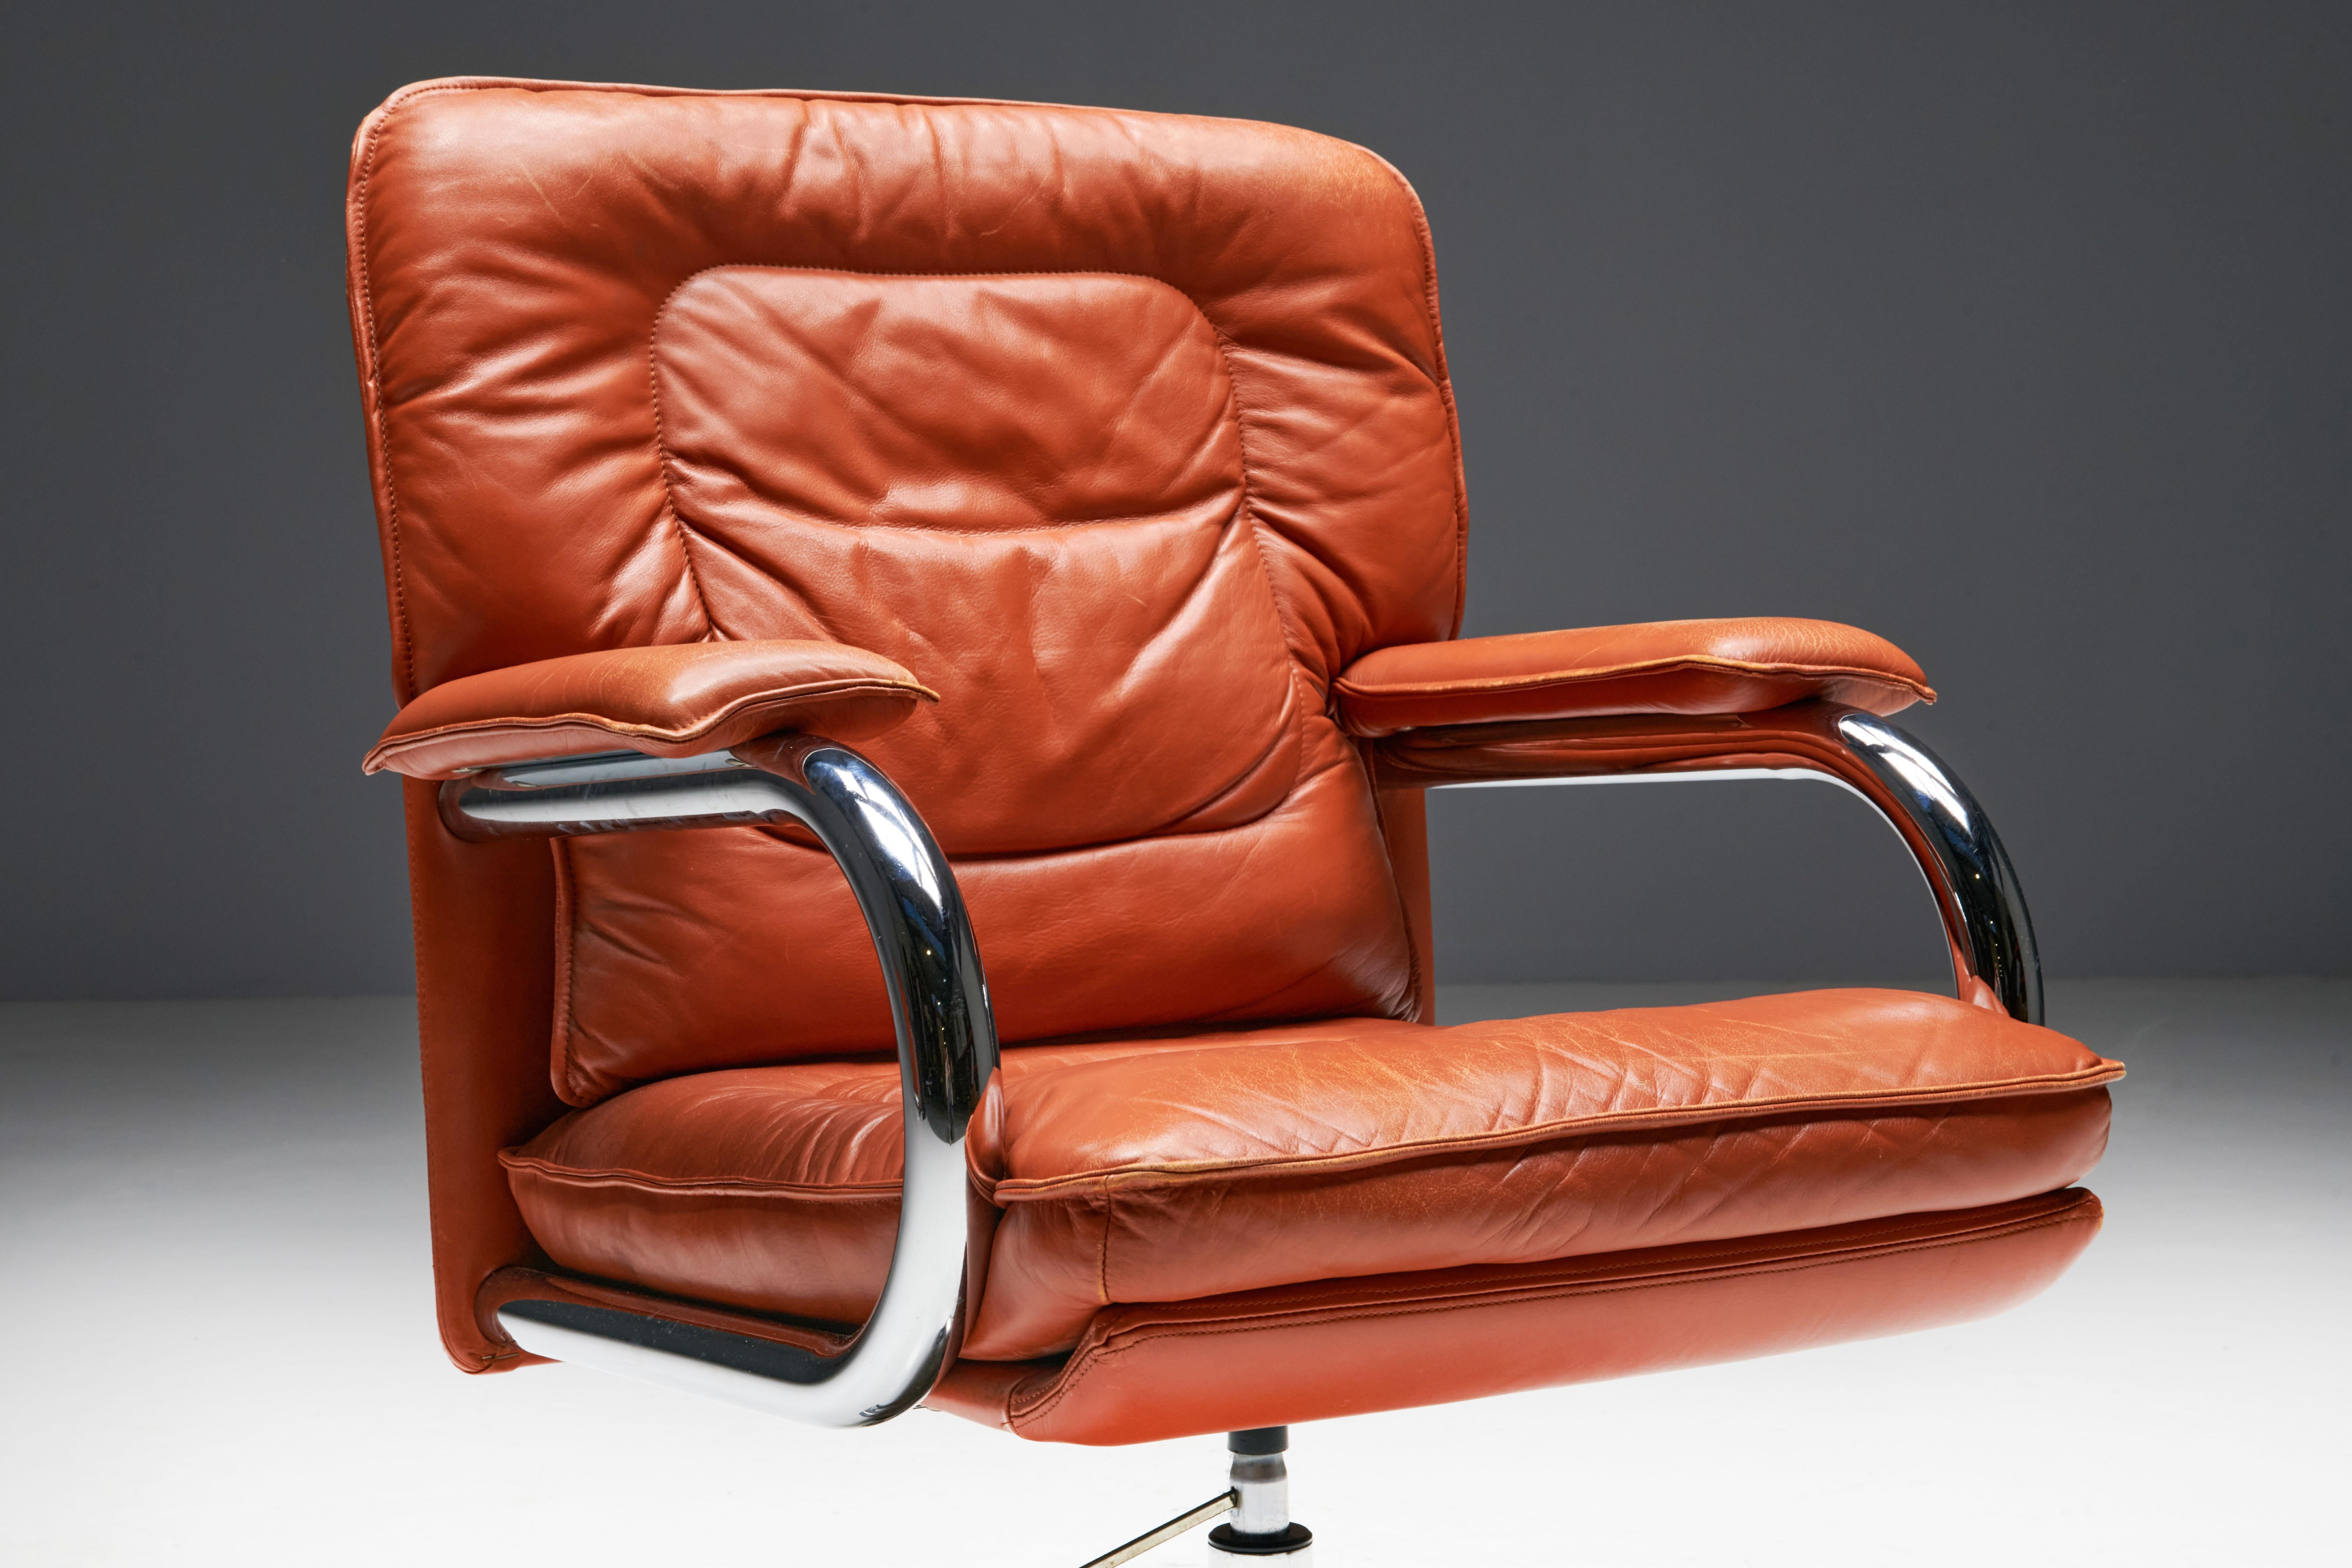 Cognacfarbener Bürostuhl aus Leder, entworfen von dem renommierten italienischen Designer Guido Faleschini für I4 Mariani. Dieser drehbare Schreibtischstuhl aus der Pace Collection'S fängt mit seinem kühnen Design und dem leuchtend roten